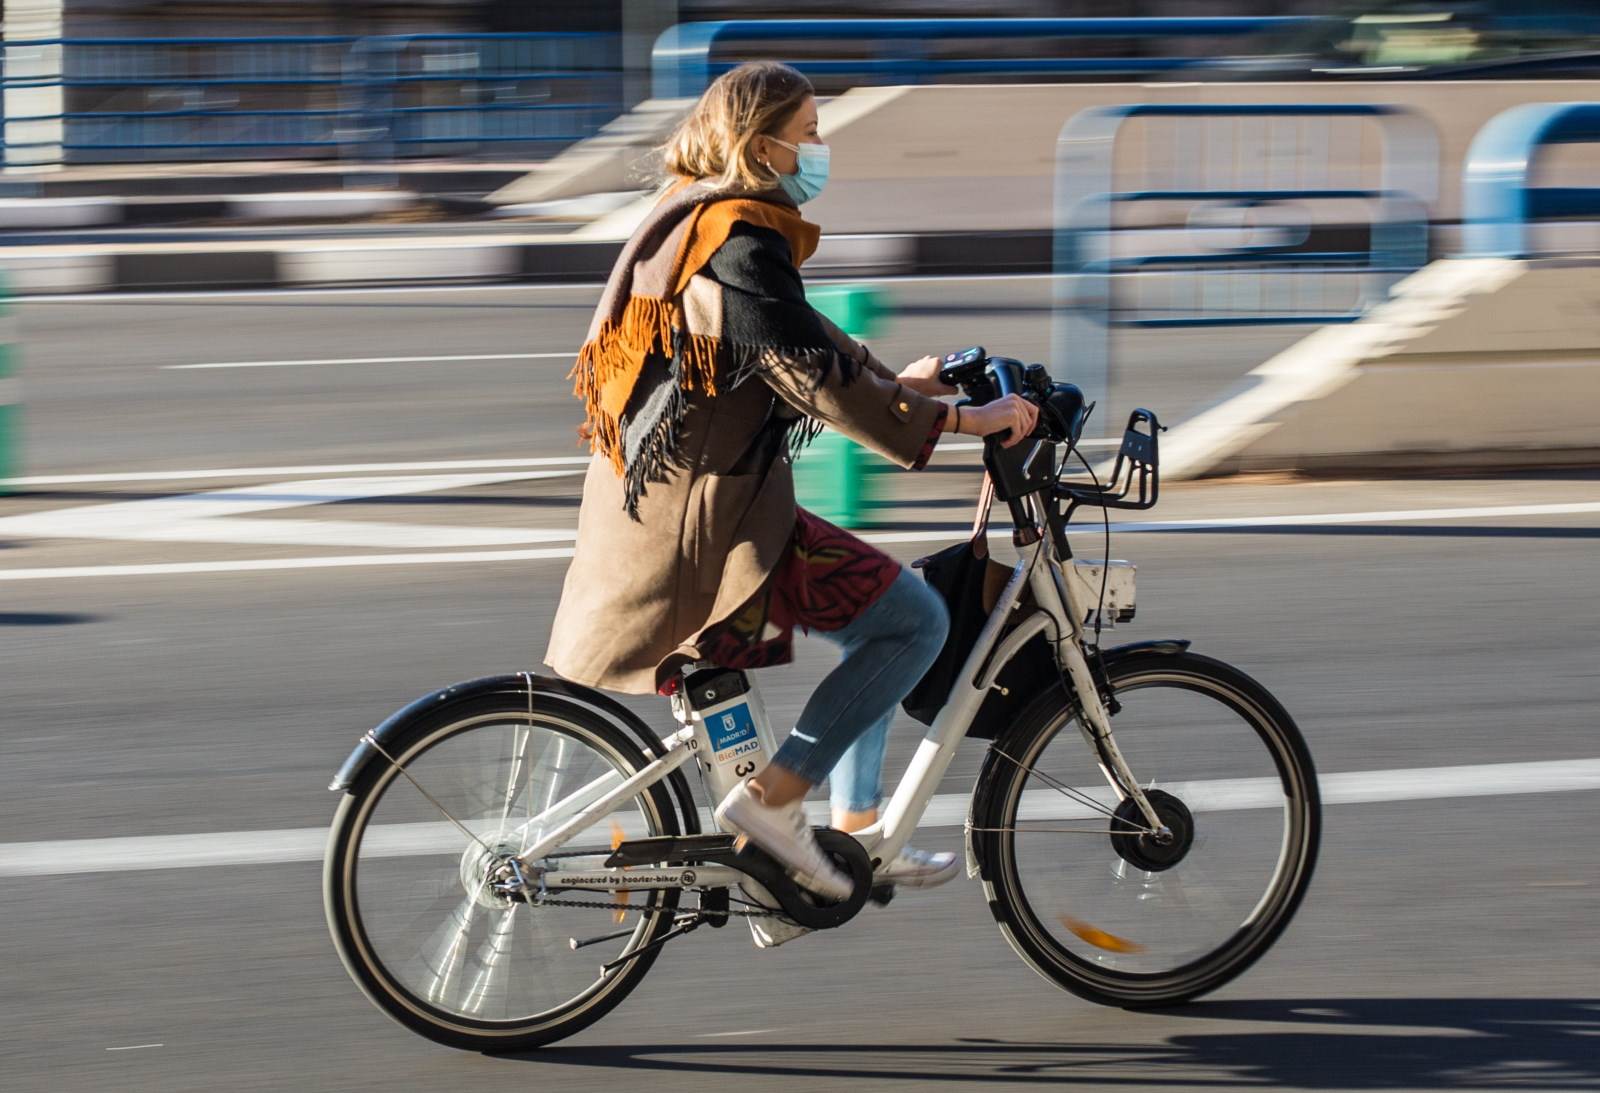  elektricni-bicikl-zamena-zdraviji-prevoz-francuska-inicijativa-zamene-2500-evra-za-stari-automobil 